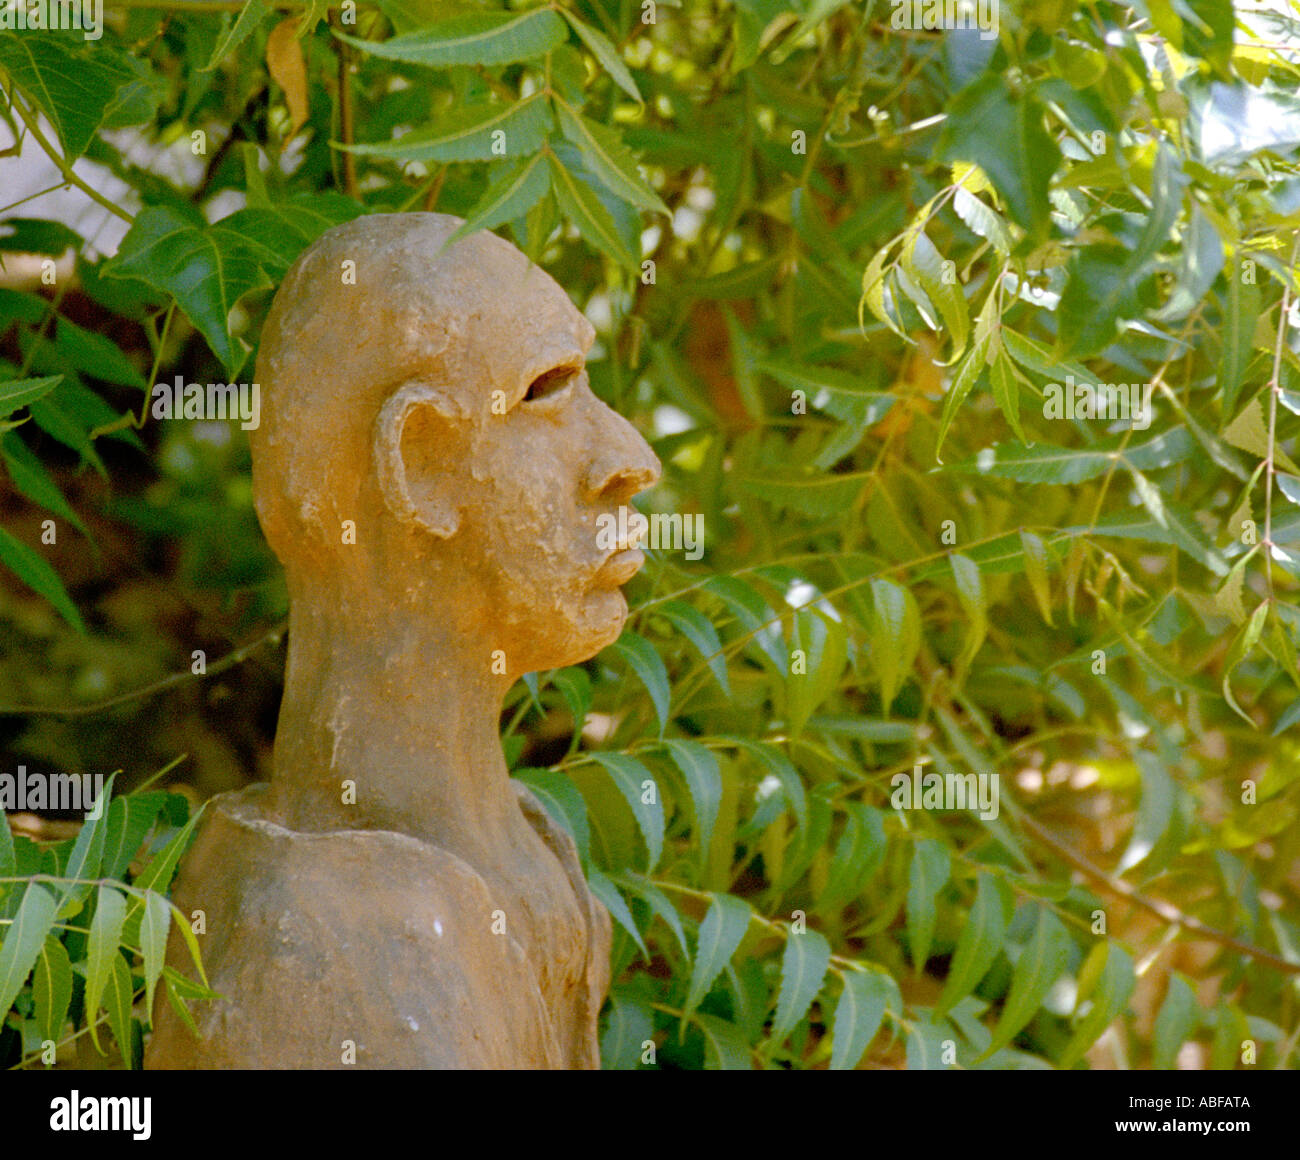 Une sculpture en terre cuite d'une tête de l'homme placé à côté d'une usine de neem représentant symboliquement le lien entre l'homme et la nature Banque D'Images